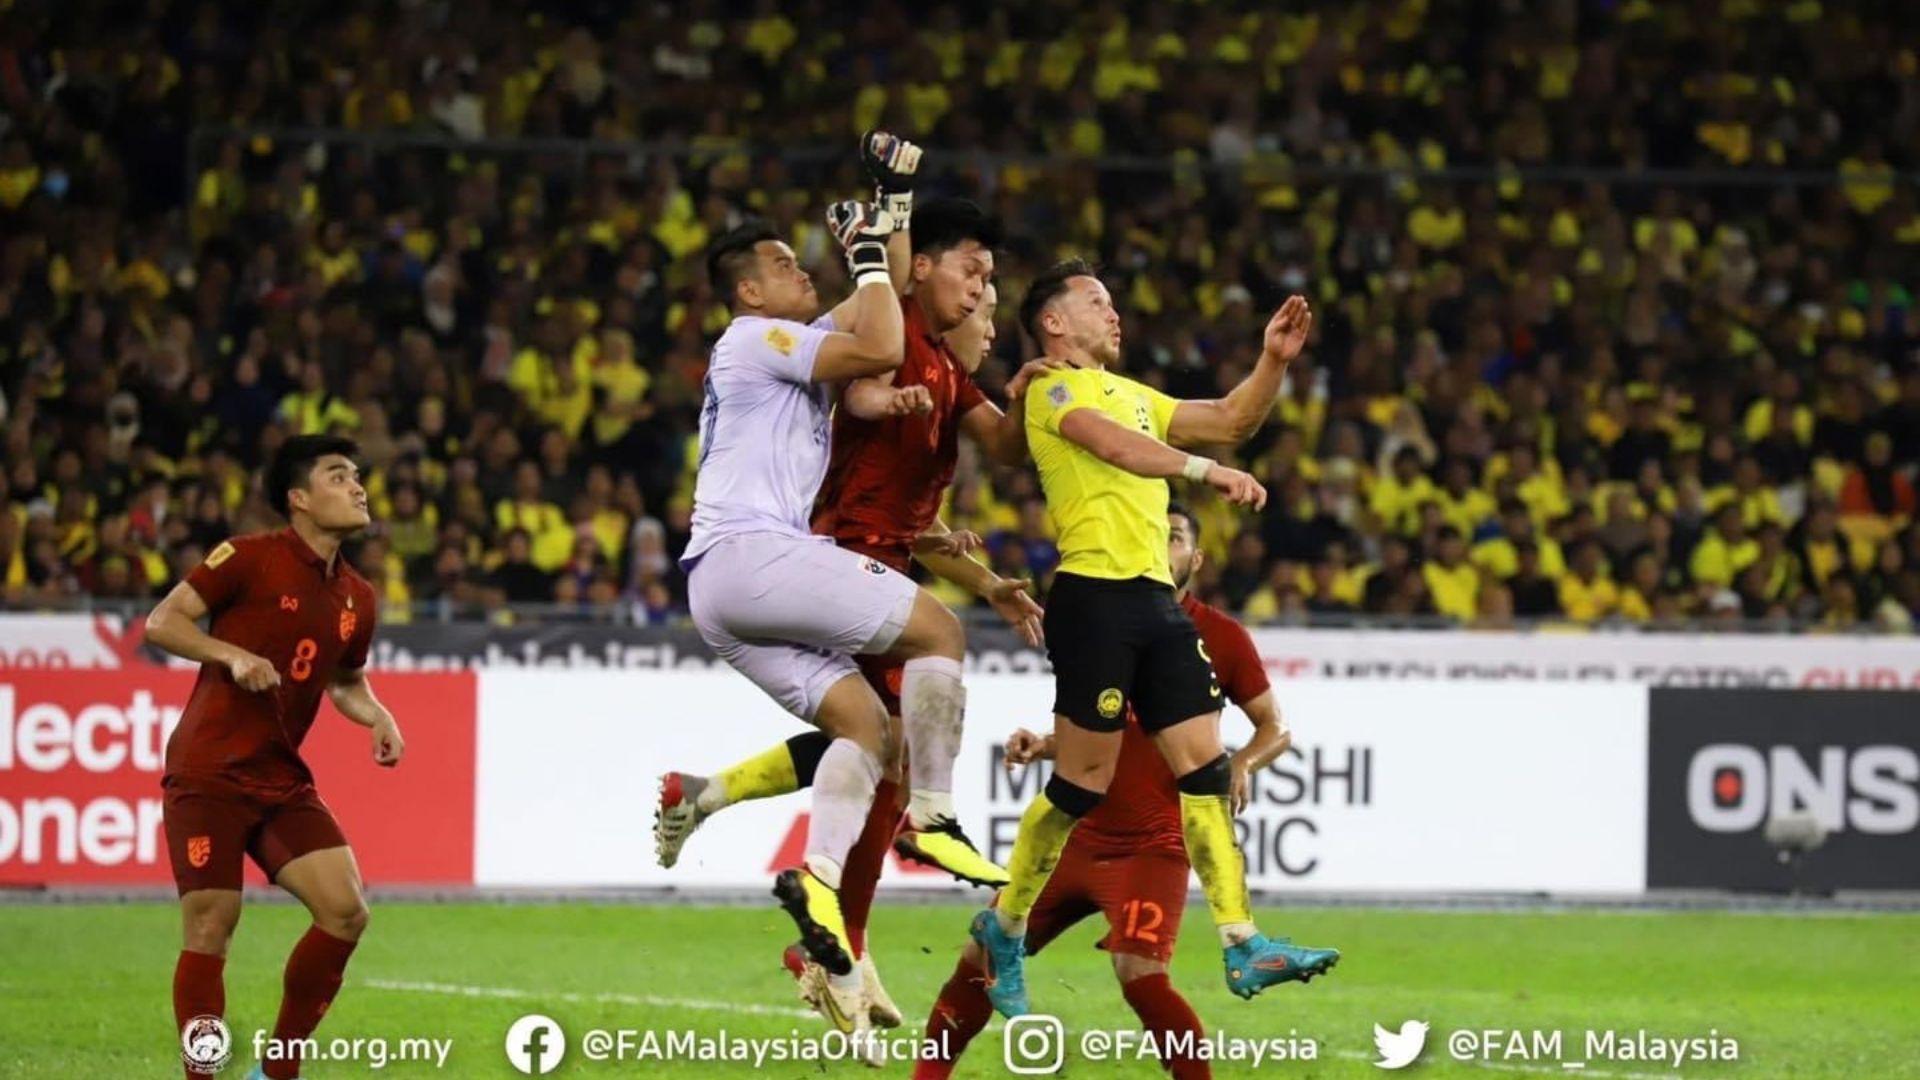 Famalaysia 1 Gol Ke-2 Malaysia Sebenarnya Sah Tapi Pengadil Tertipu